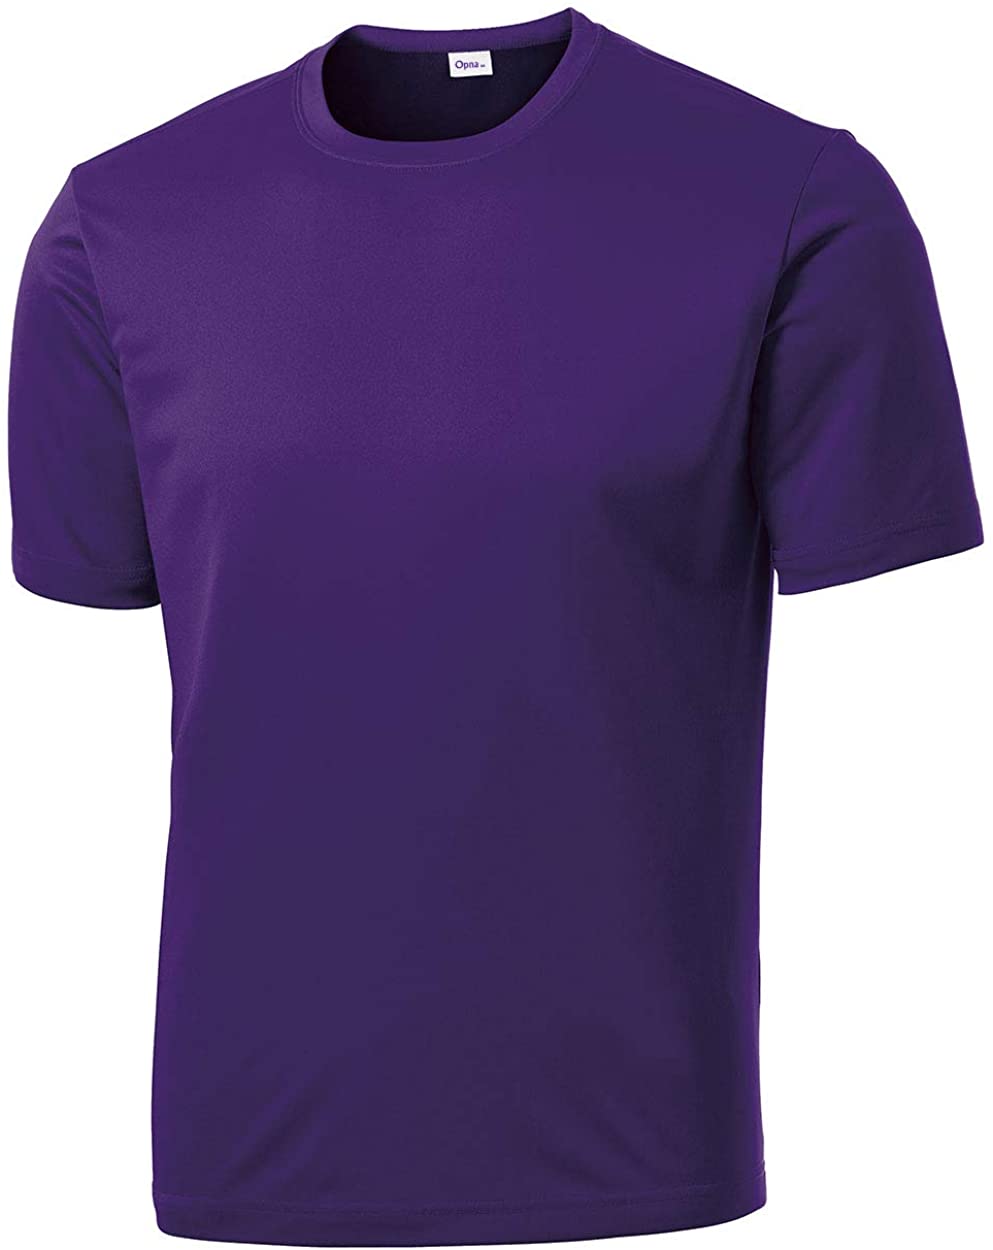 Opna Women's Athletic All Sport V-Neck Tee Shirt